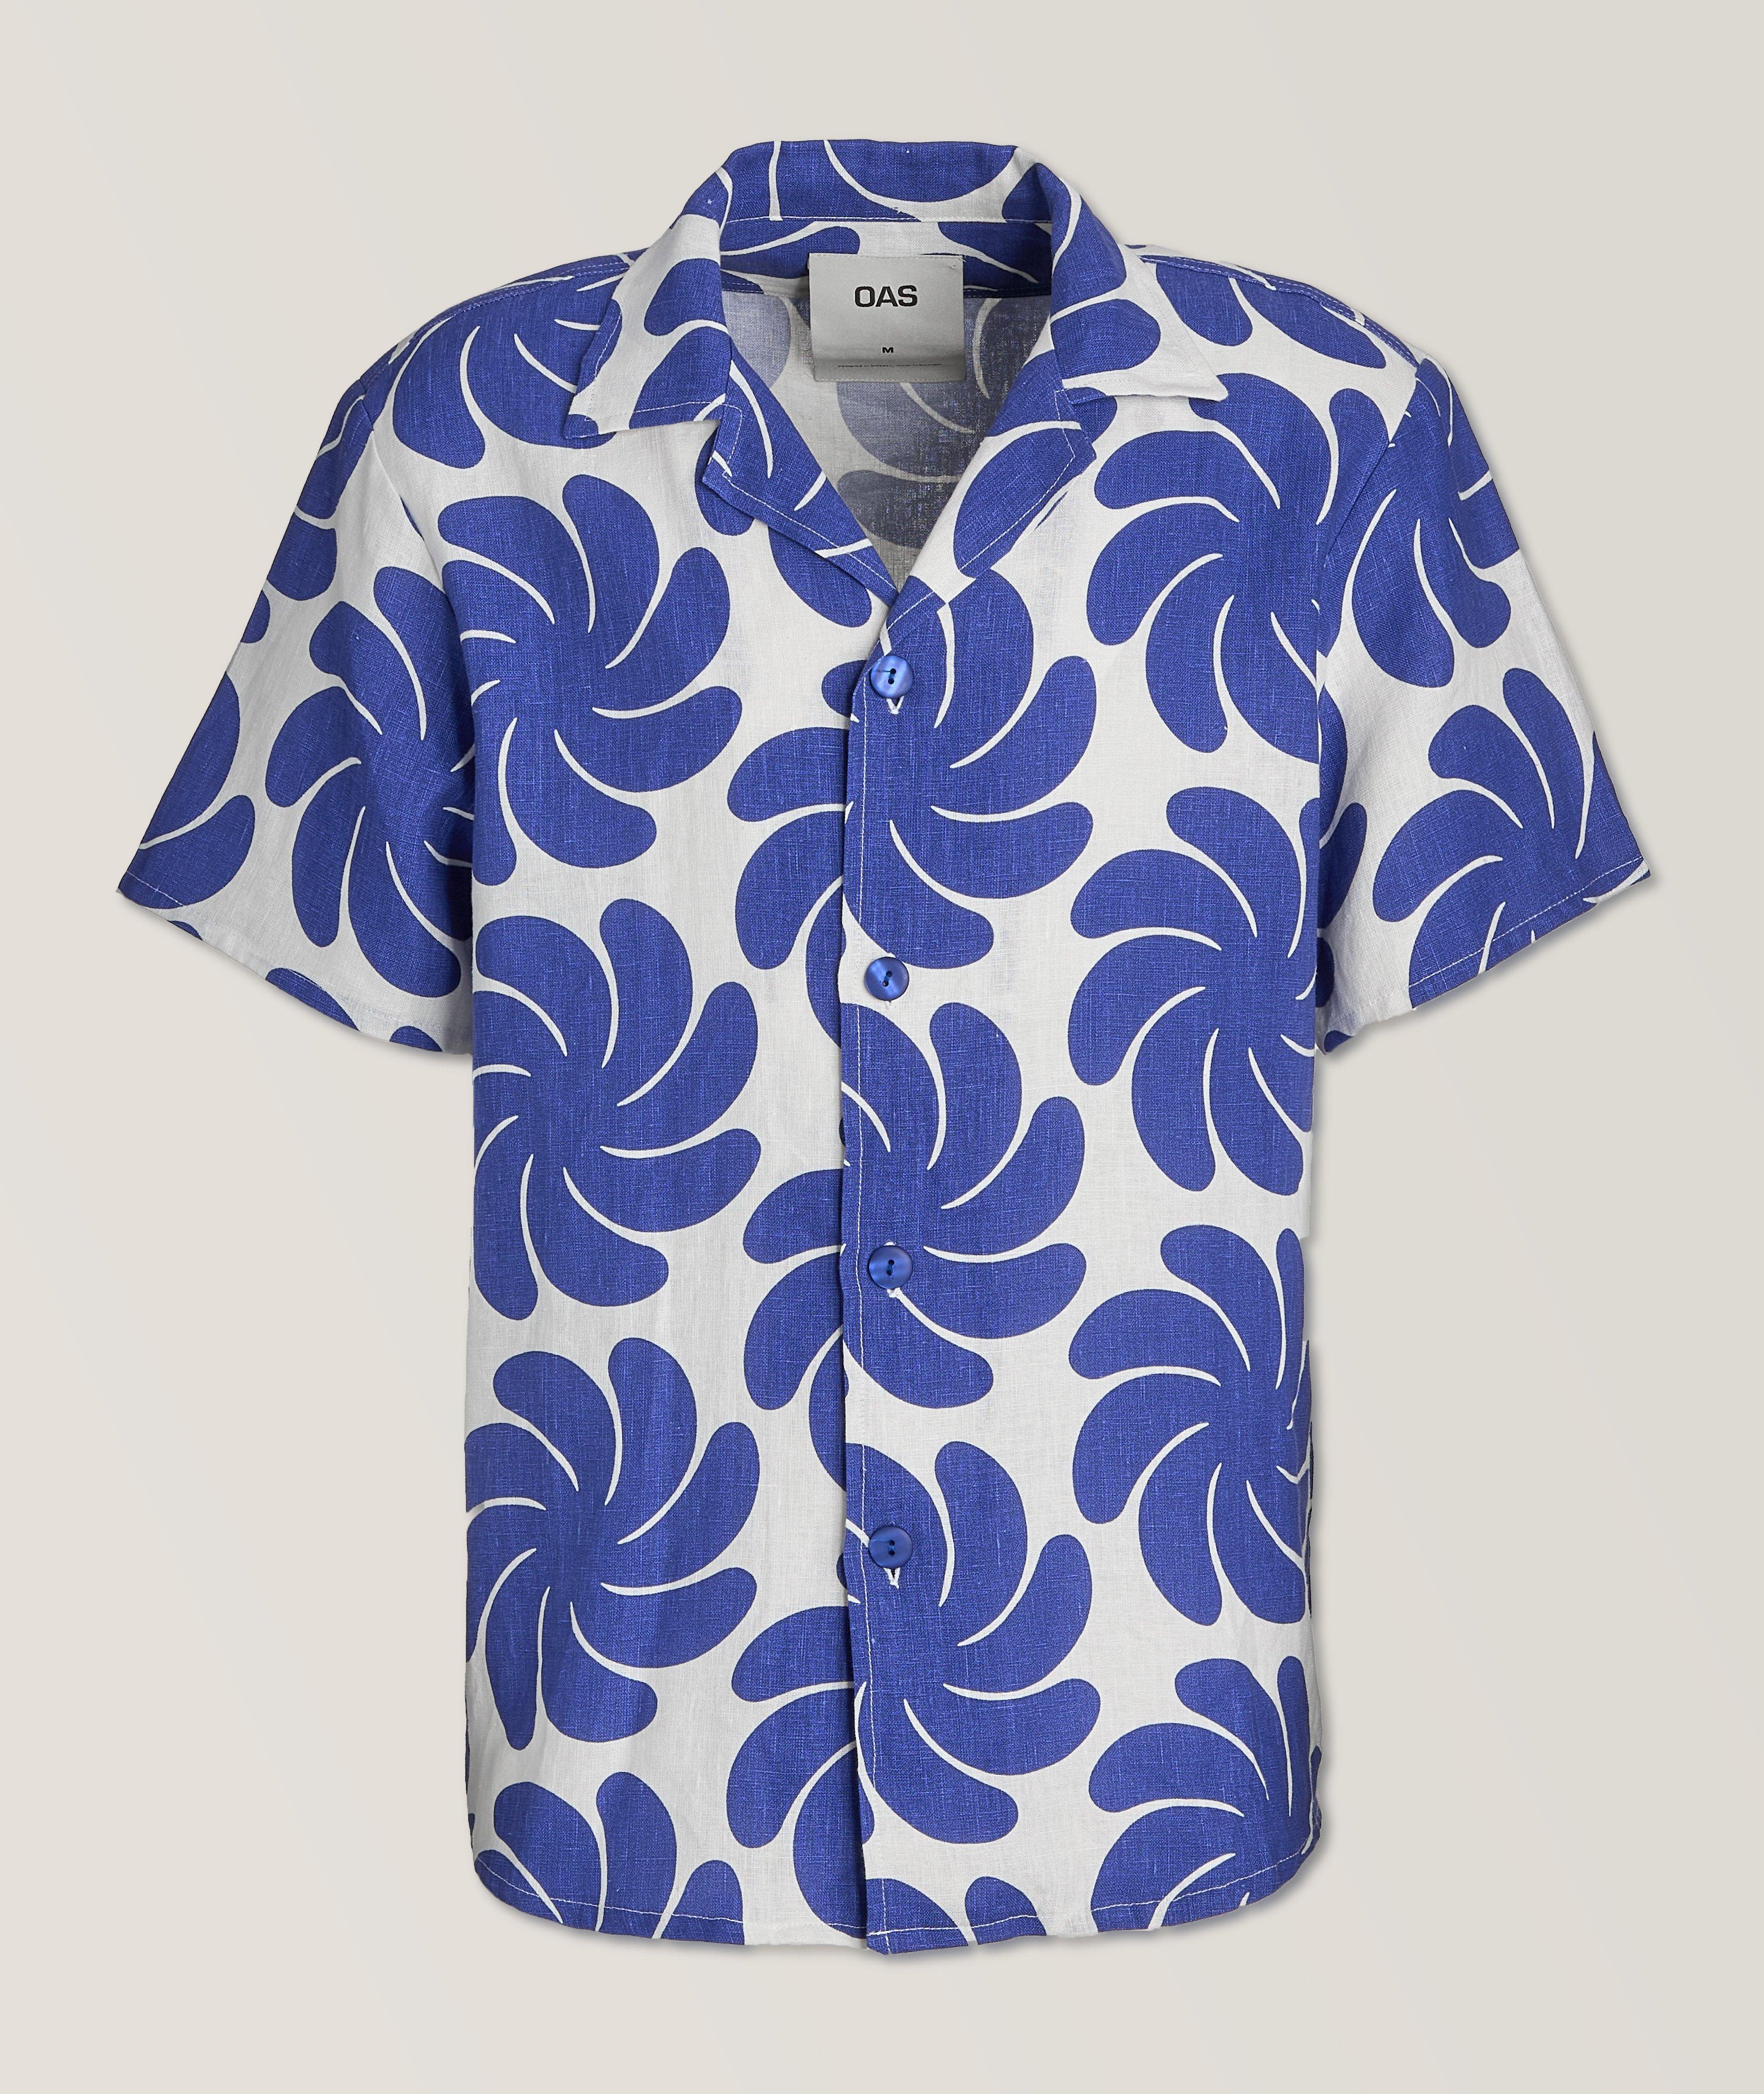 OAS Botanical Swirl Linen Sport Shirt 